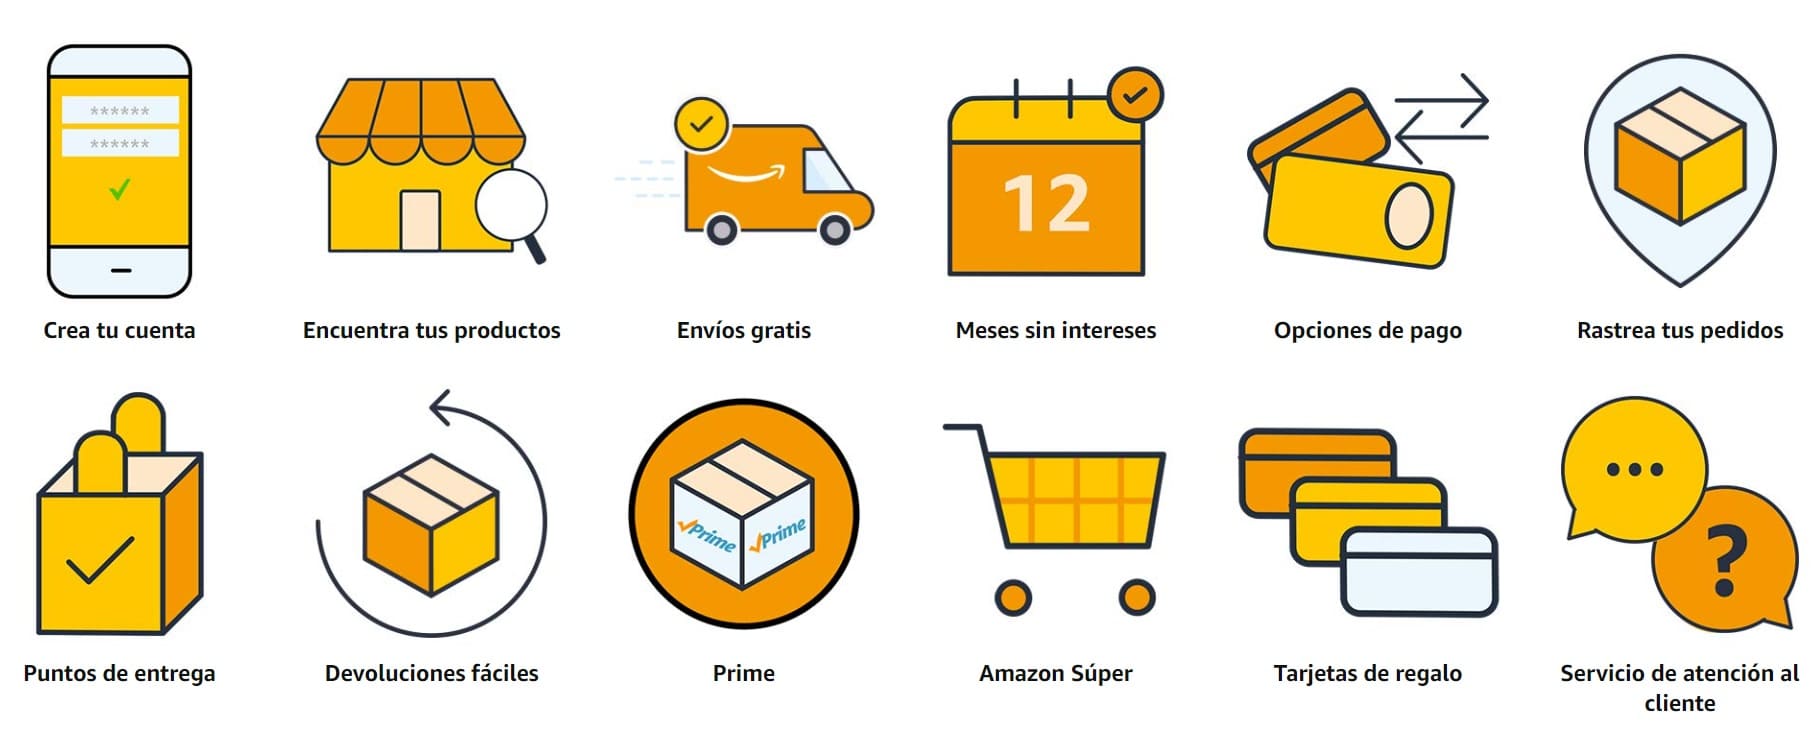 ejemplos de buena atención al cliente: Amazon